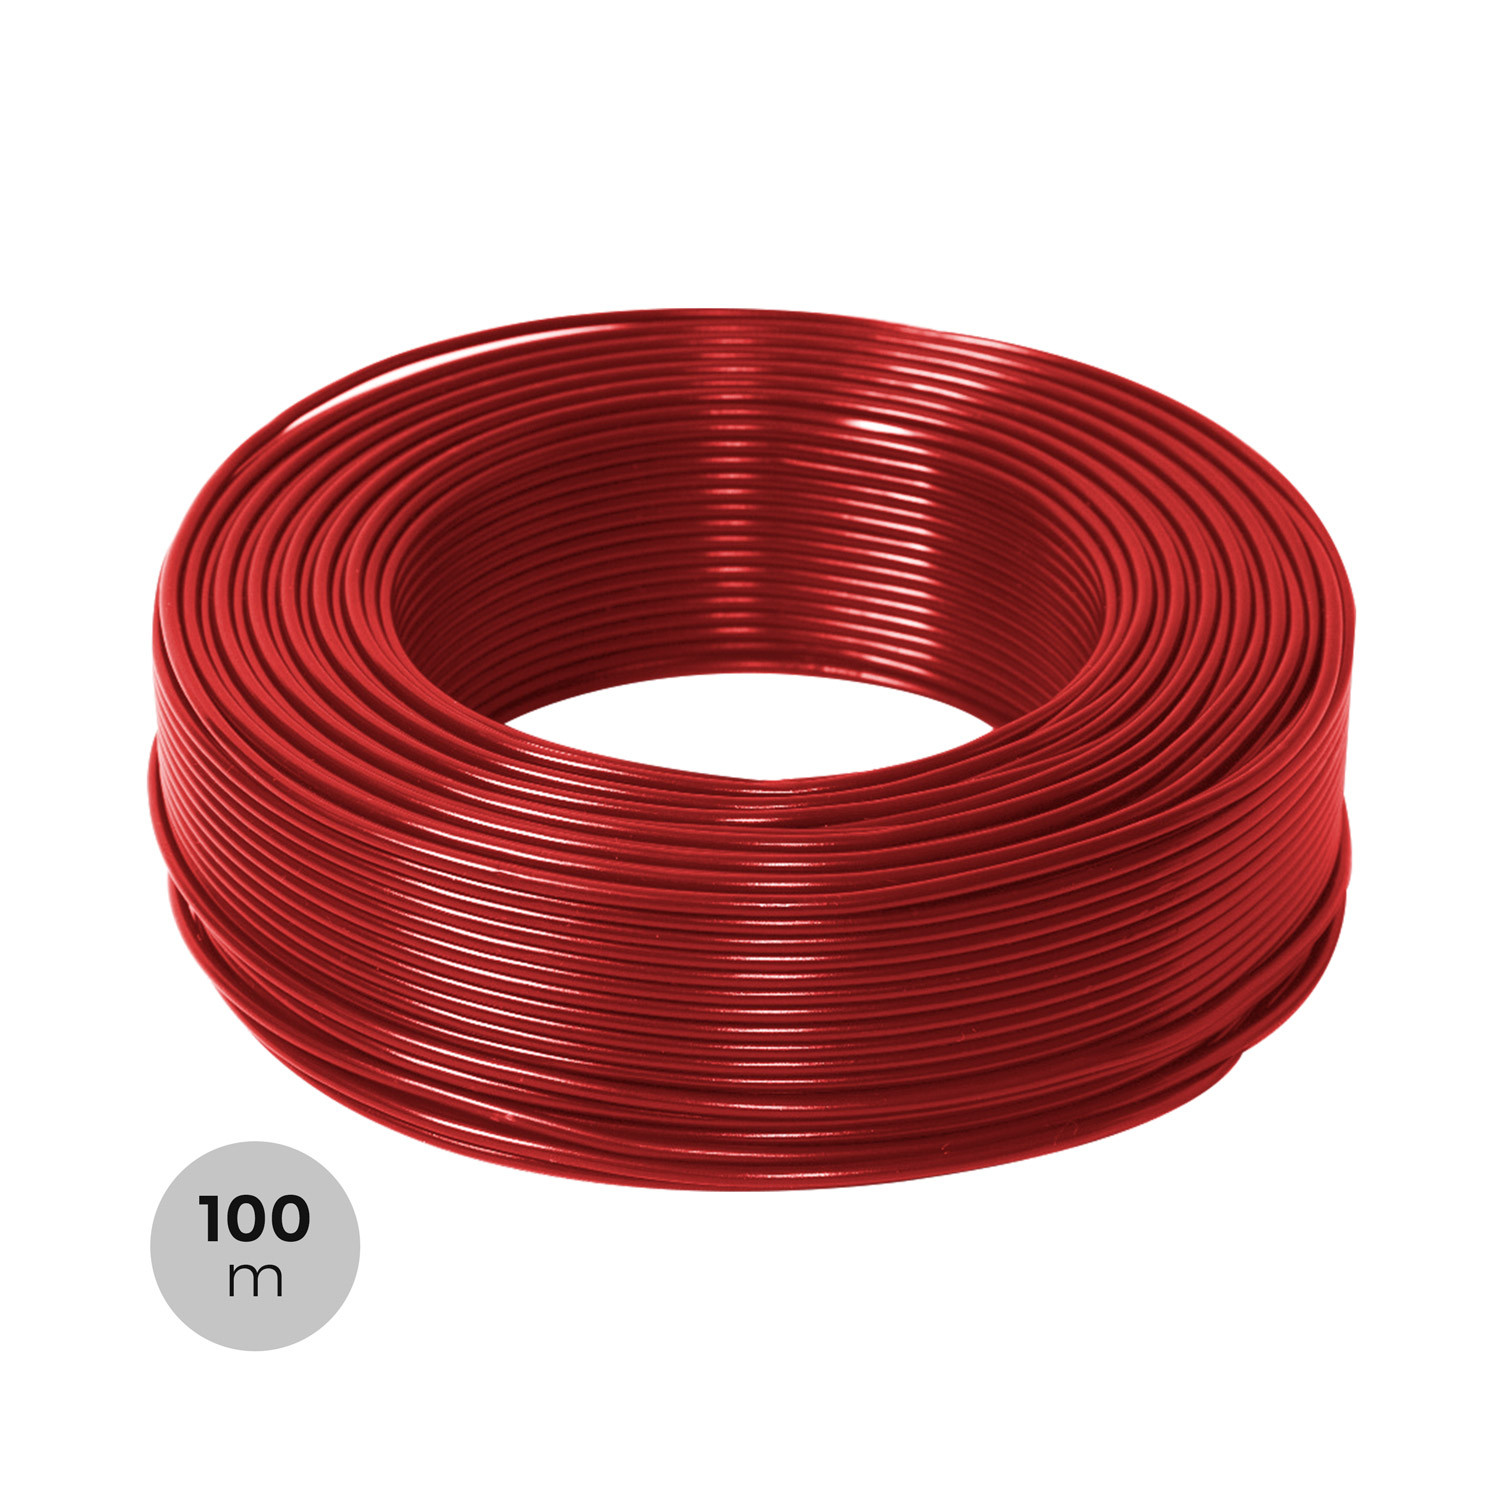 H07V-U 1,5mm² Single Wire PVC Wire Line 100 M Various COLORS 0,16 €/M. 